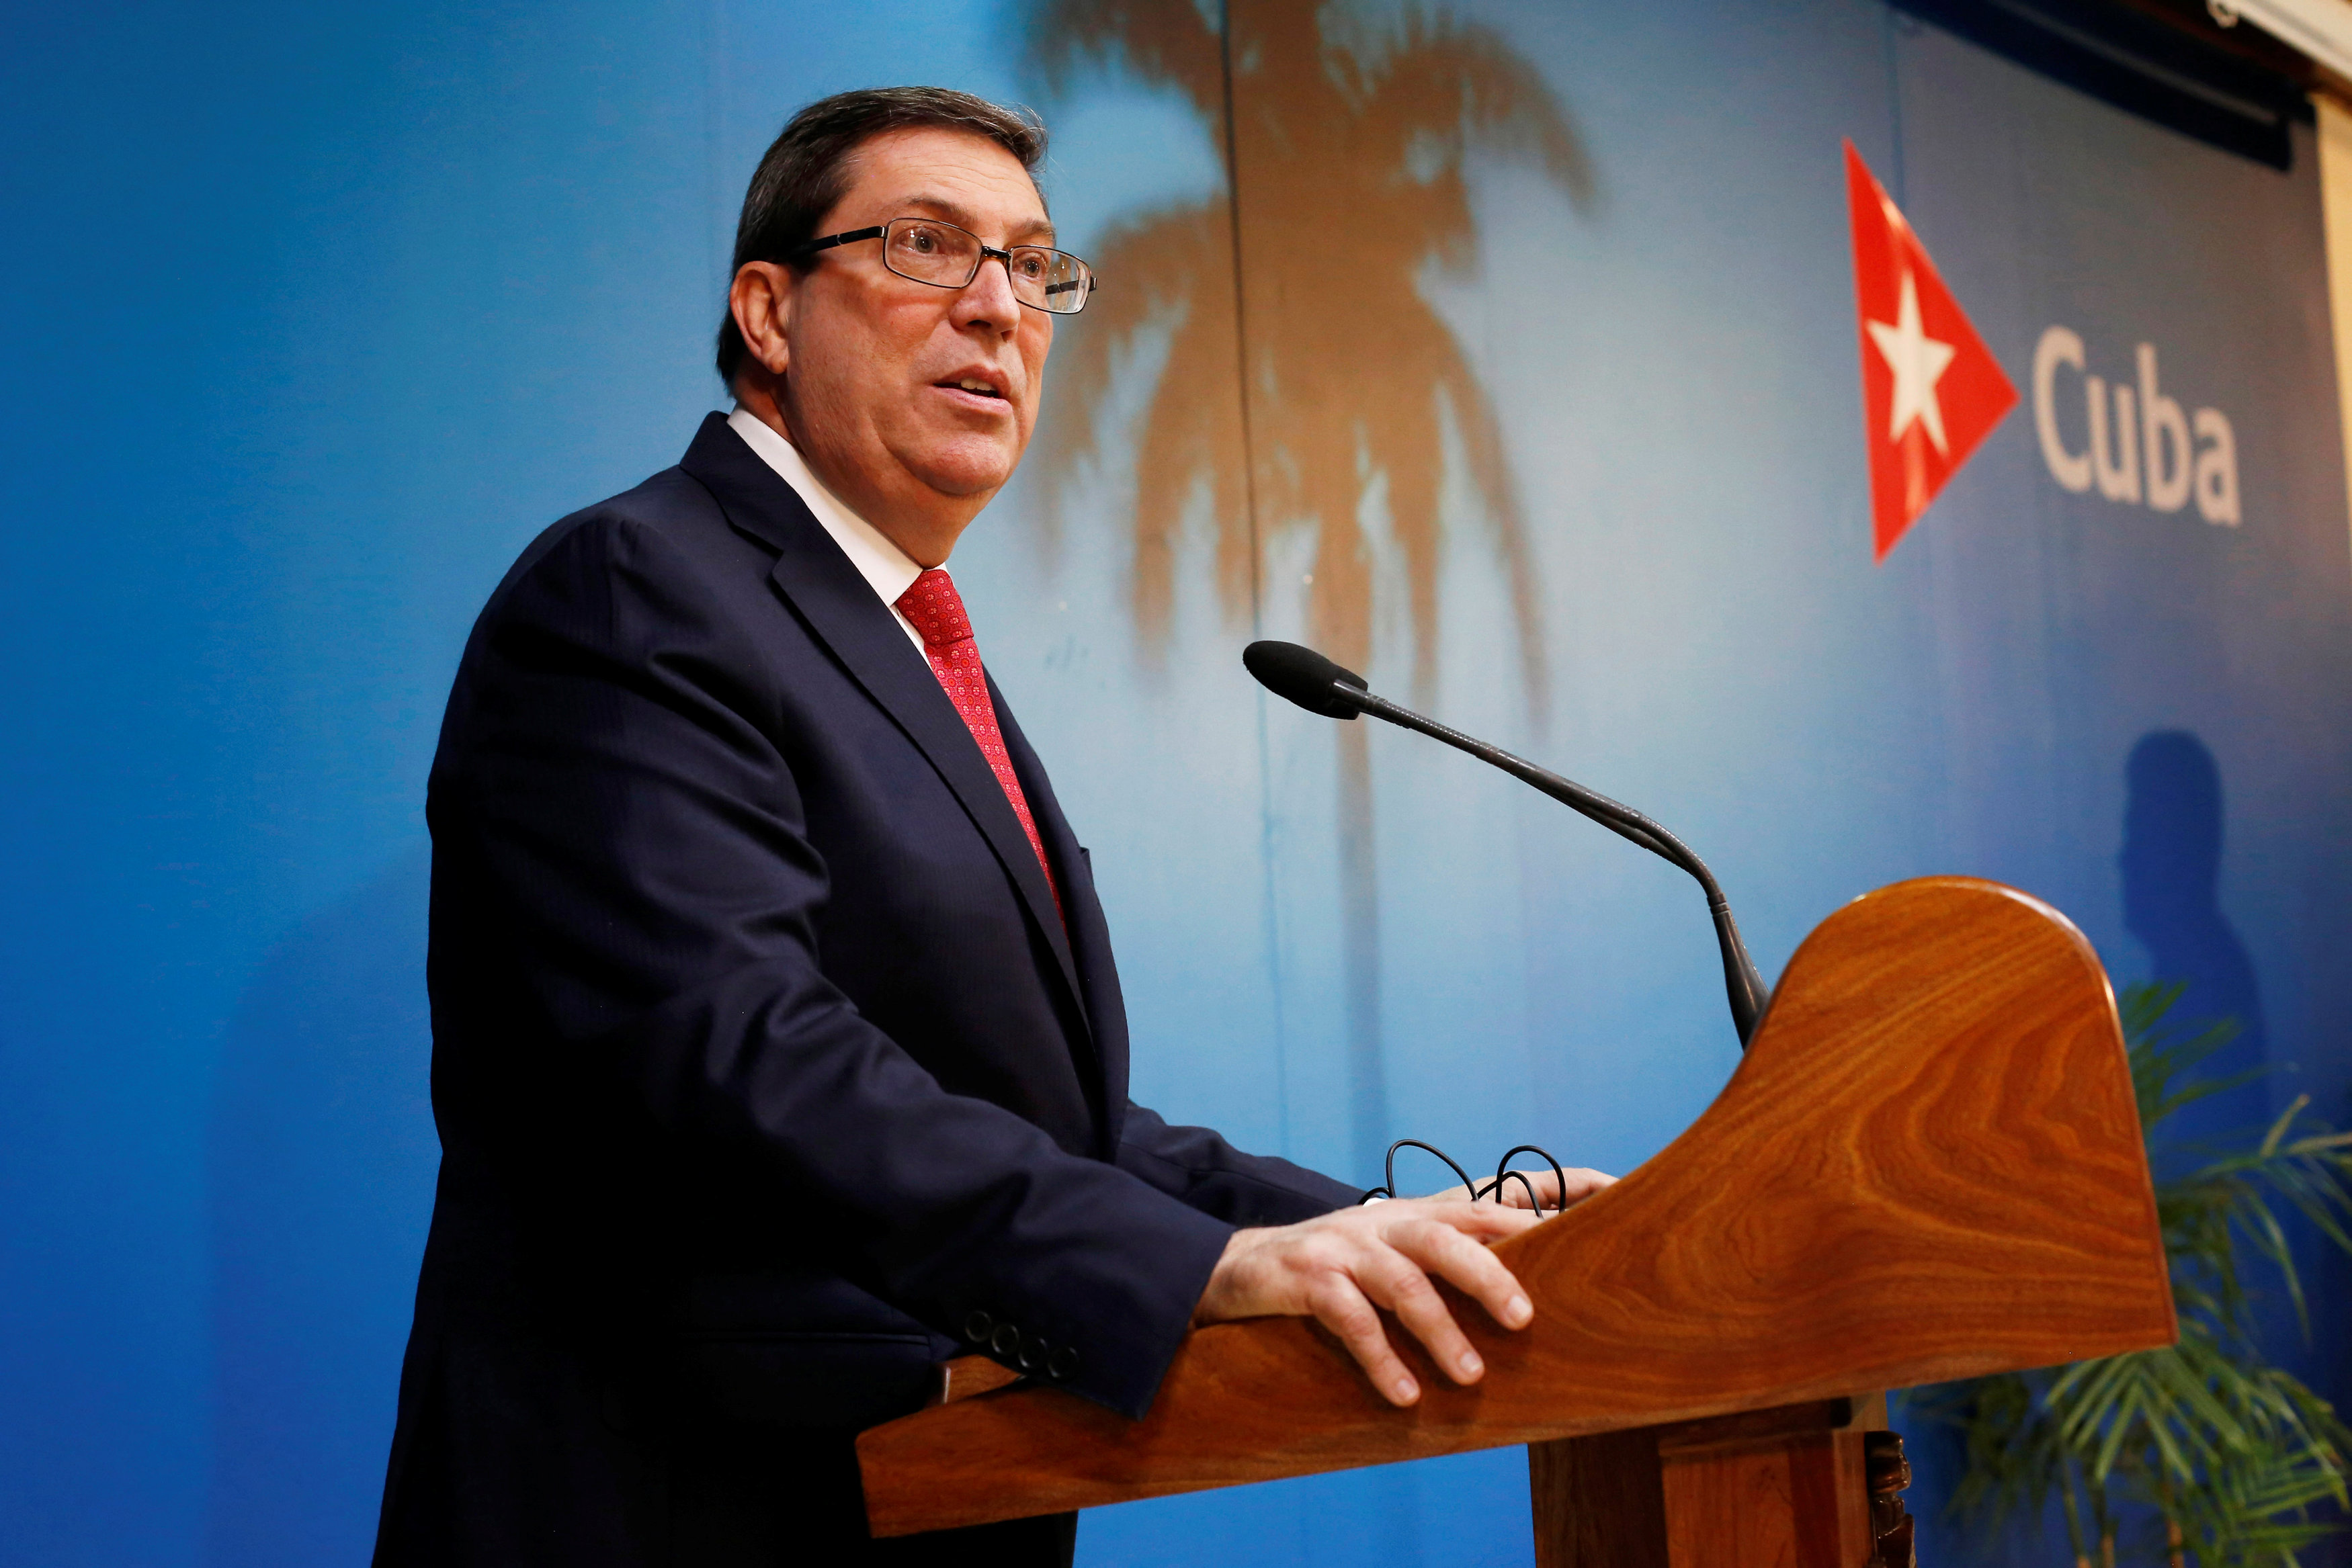 Foto: El ministro de Relaciones Exteriores de Cuba, Bruno Rodríguez, habla durante una conferencia de prensa en La Habana, el 19 de febrero del 2019